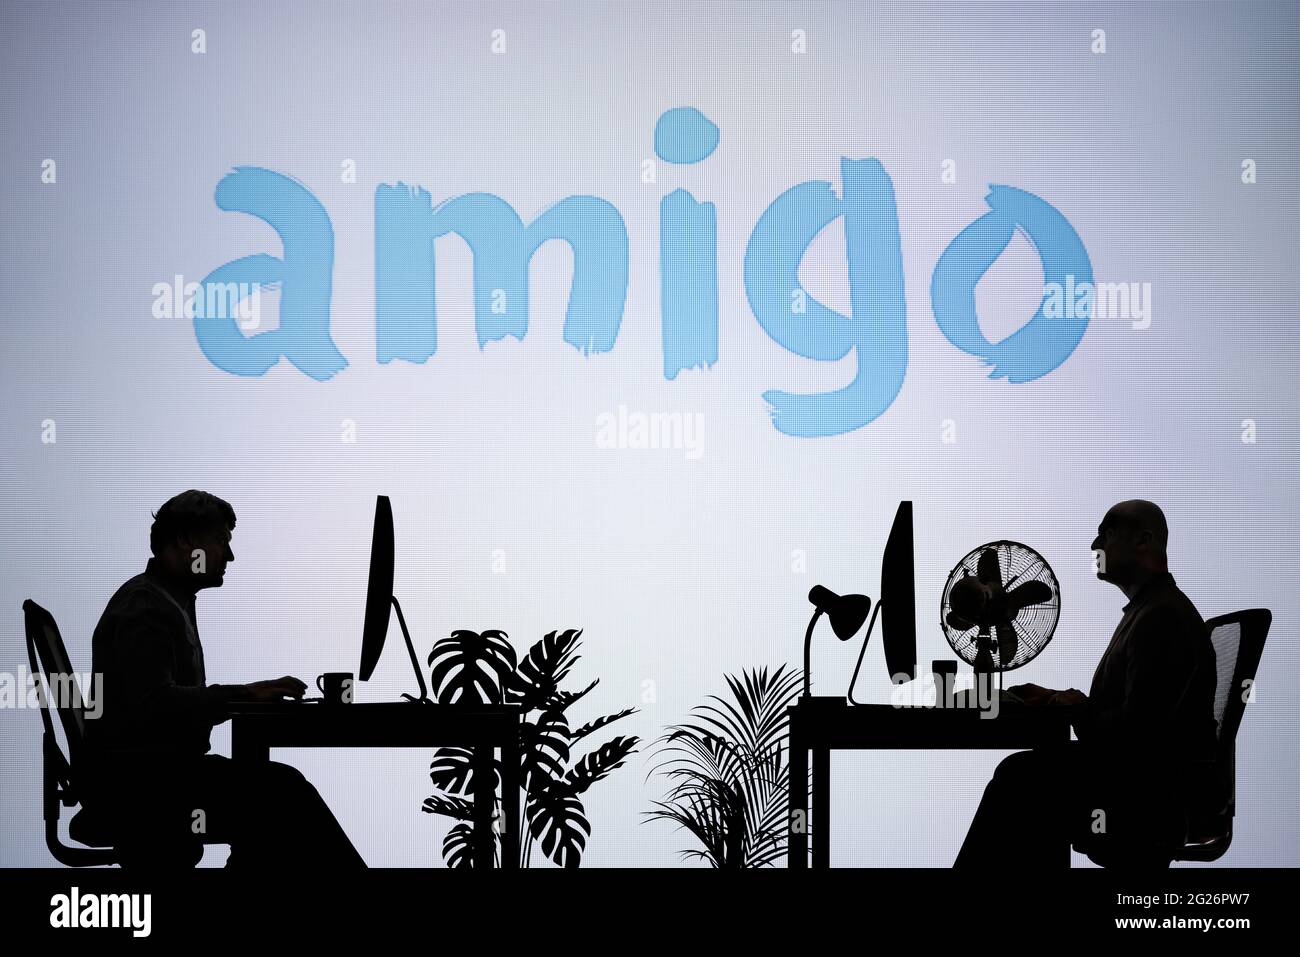 Il logo Amigo Loans viene visualizzato su uno schermo LED sullo sfondo, mentre due persone con silhouette lavorano in un ambiente di ufficio (solo per uso editoriale) Foto Stock